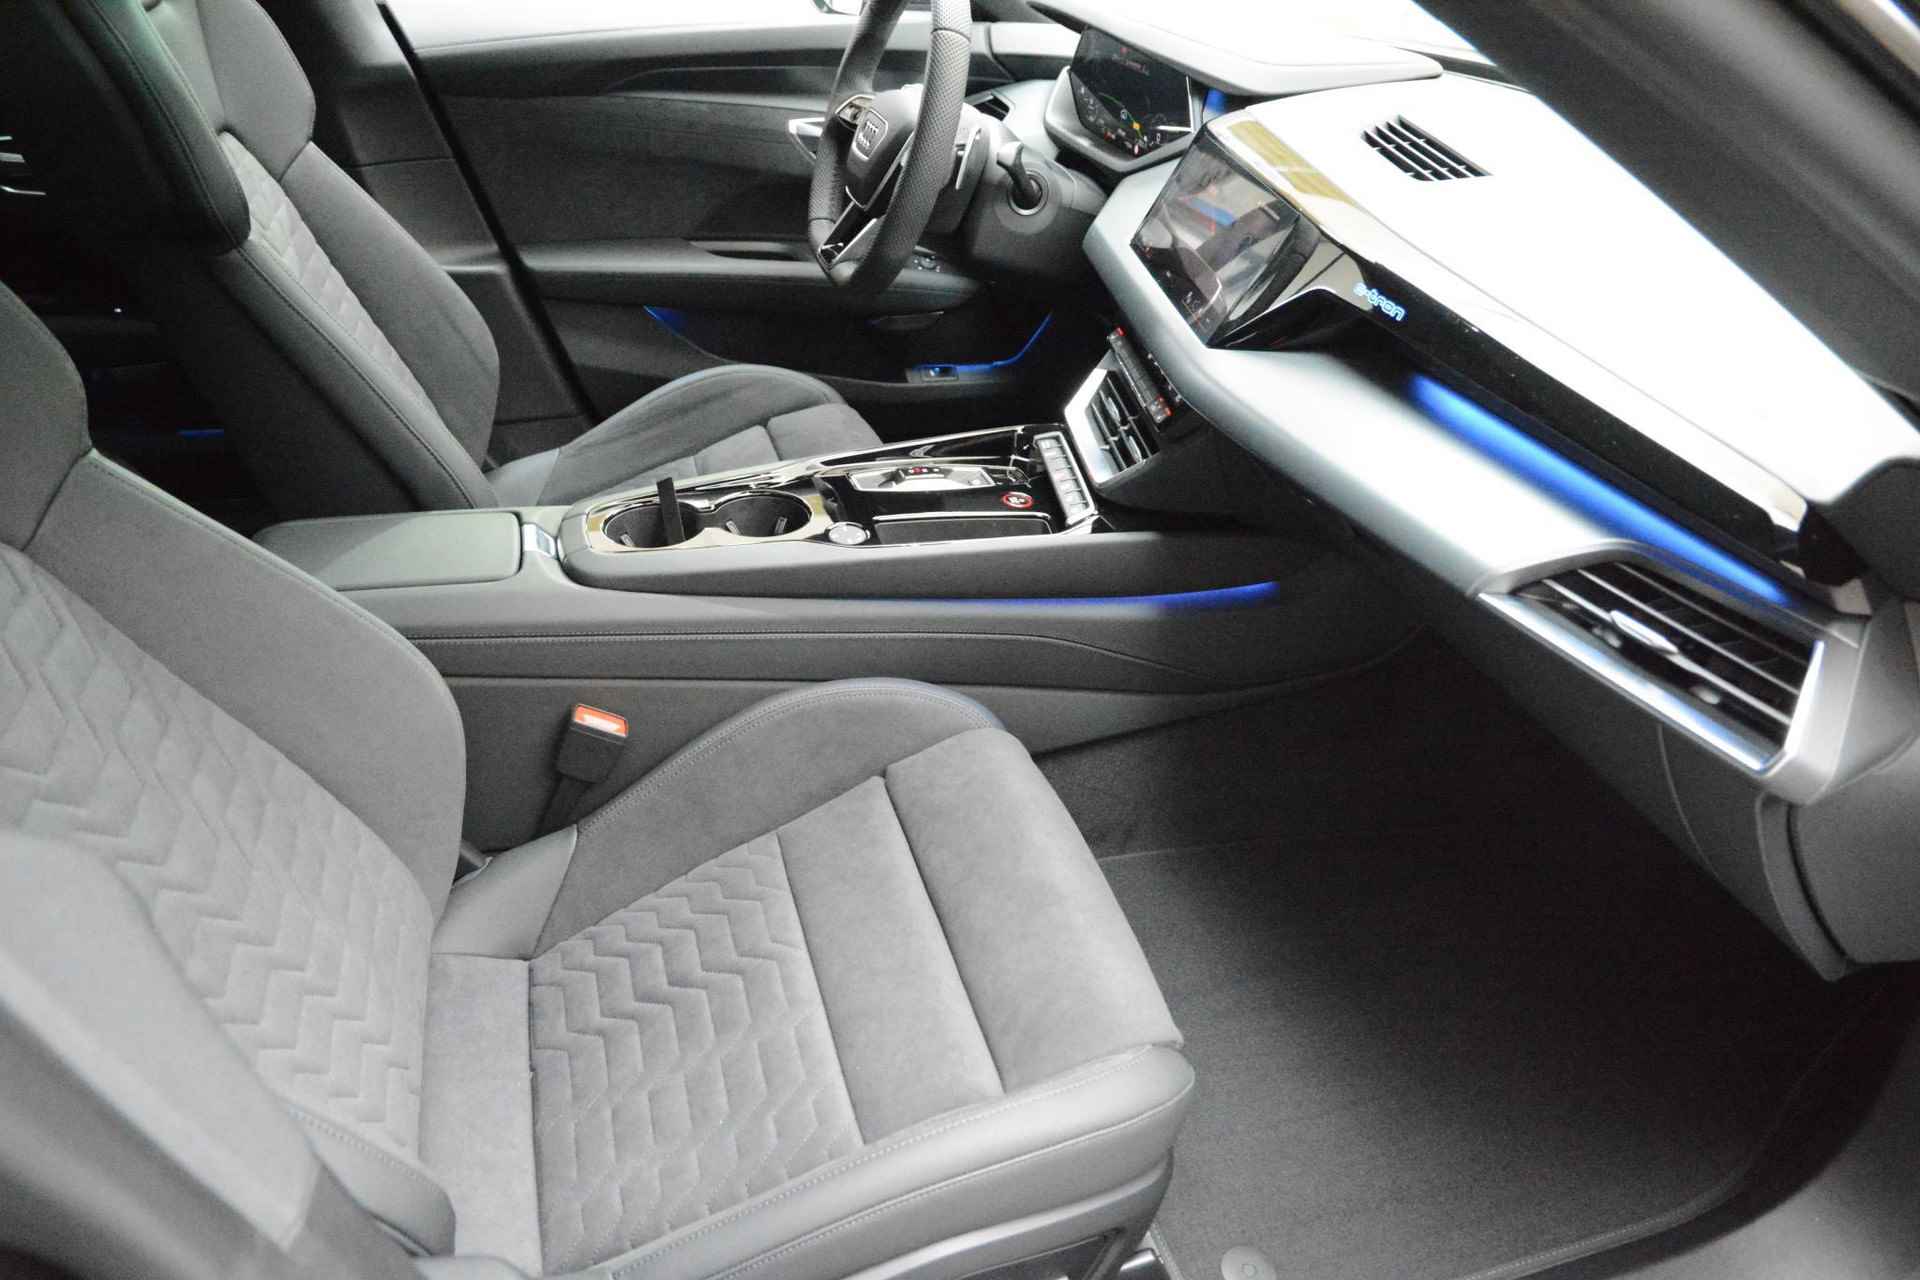 Audi e-tron GT GT Competition 93 kWh 476 PK | Nieuw | NU VAN € 143.900,00 VOOR € 123.900,00!!!! | UNIEKE KLEUR TIEFGRUN ENIGE IN NL!!! | Navigatie | Maxtrix-Laser koplampen | 360 camera | Autonome parkeerfunctie | Dynamische vierwielbesturing | Dodehoek detectie | Glazen panoramadak | Head-up display | Dynamiekpakket plus | Audi virtual cockpit plus | Stoelverwarming voor en achter | Lichtpakket plus ambient light | Optiekpakket zwart plus - 23/30